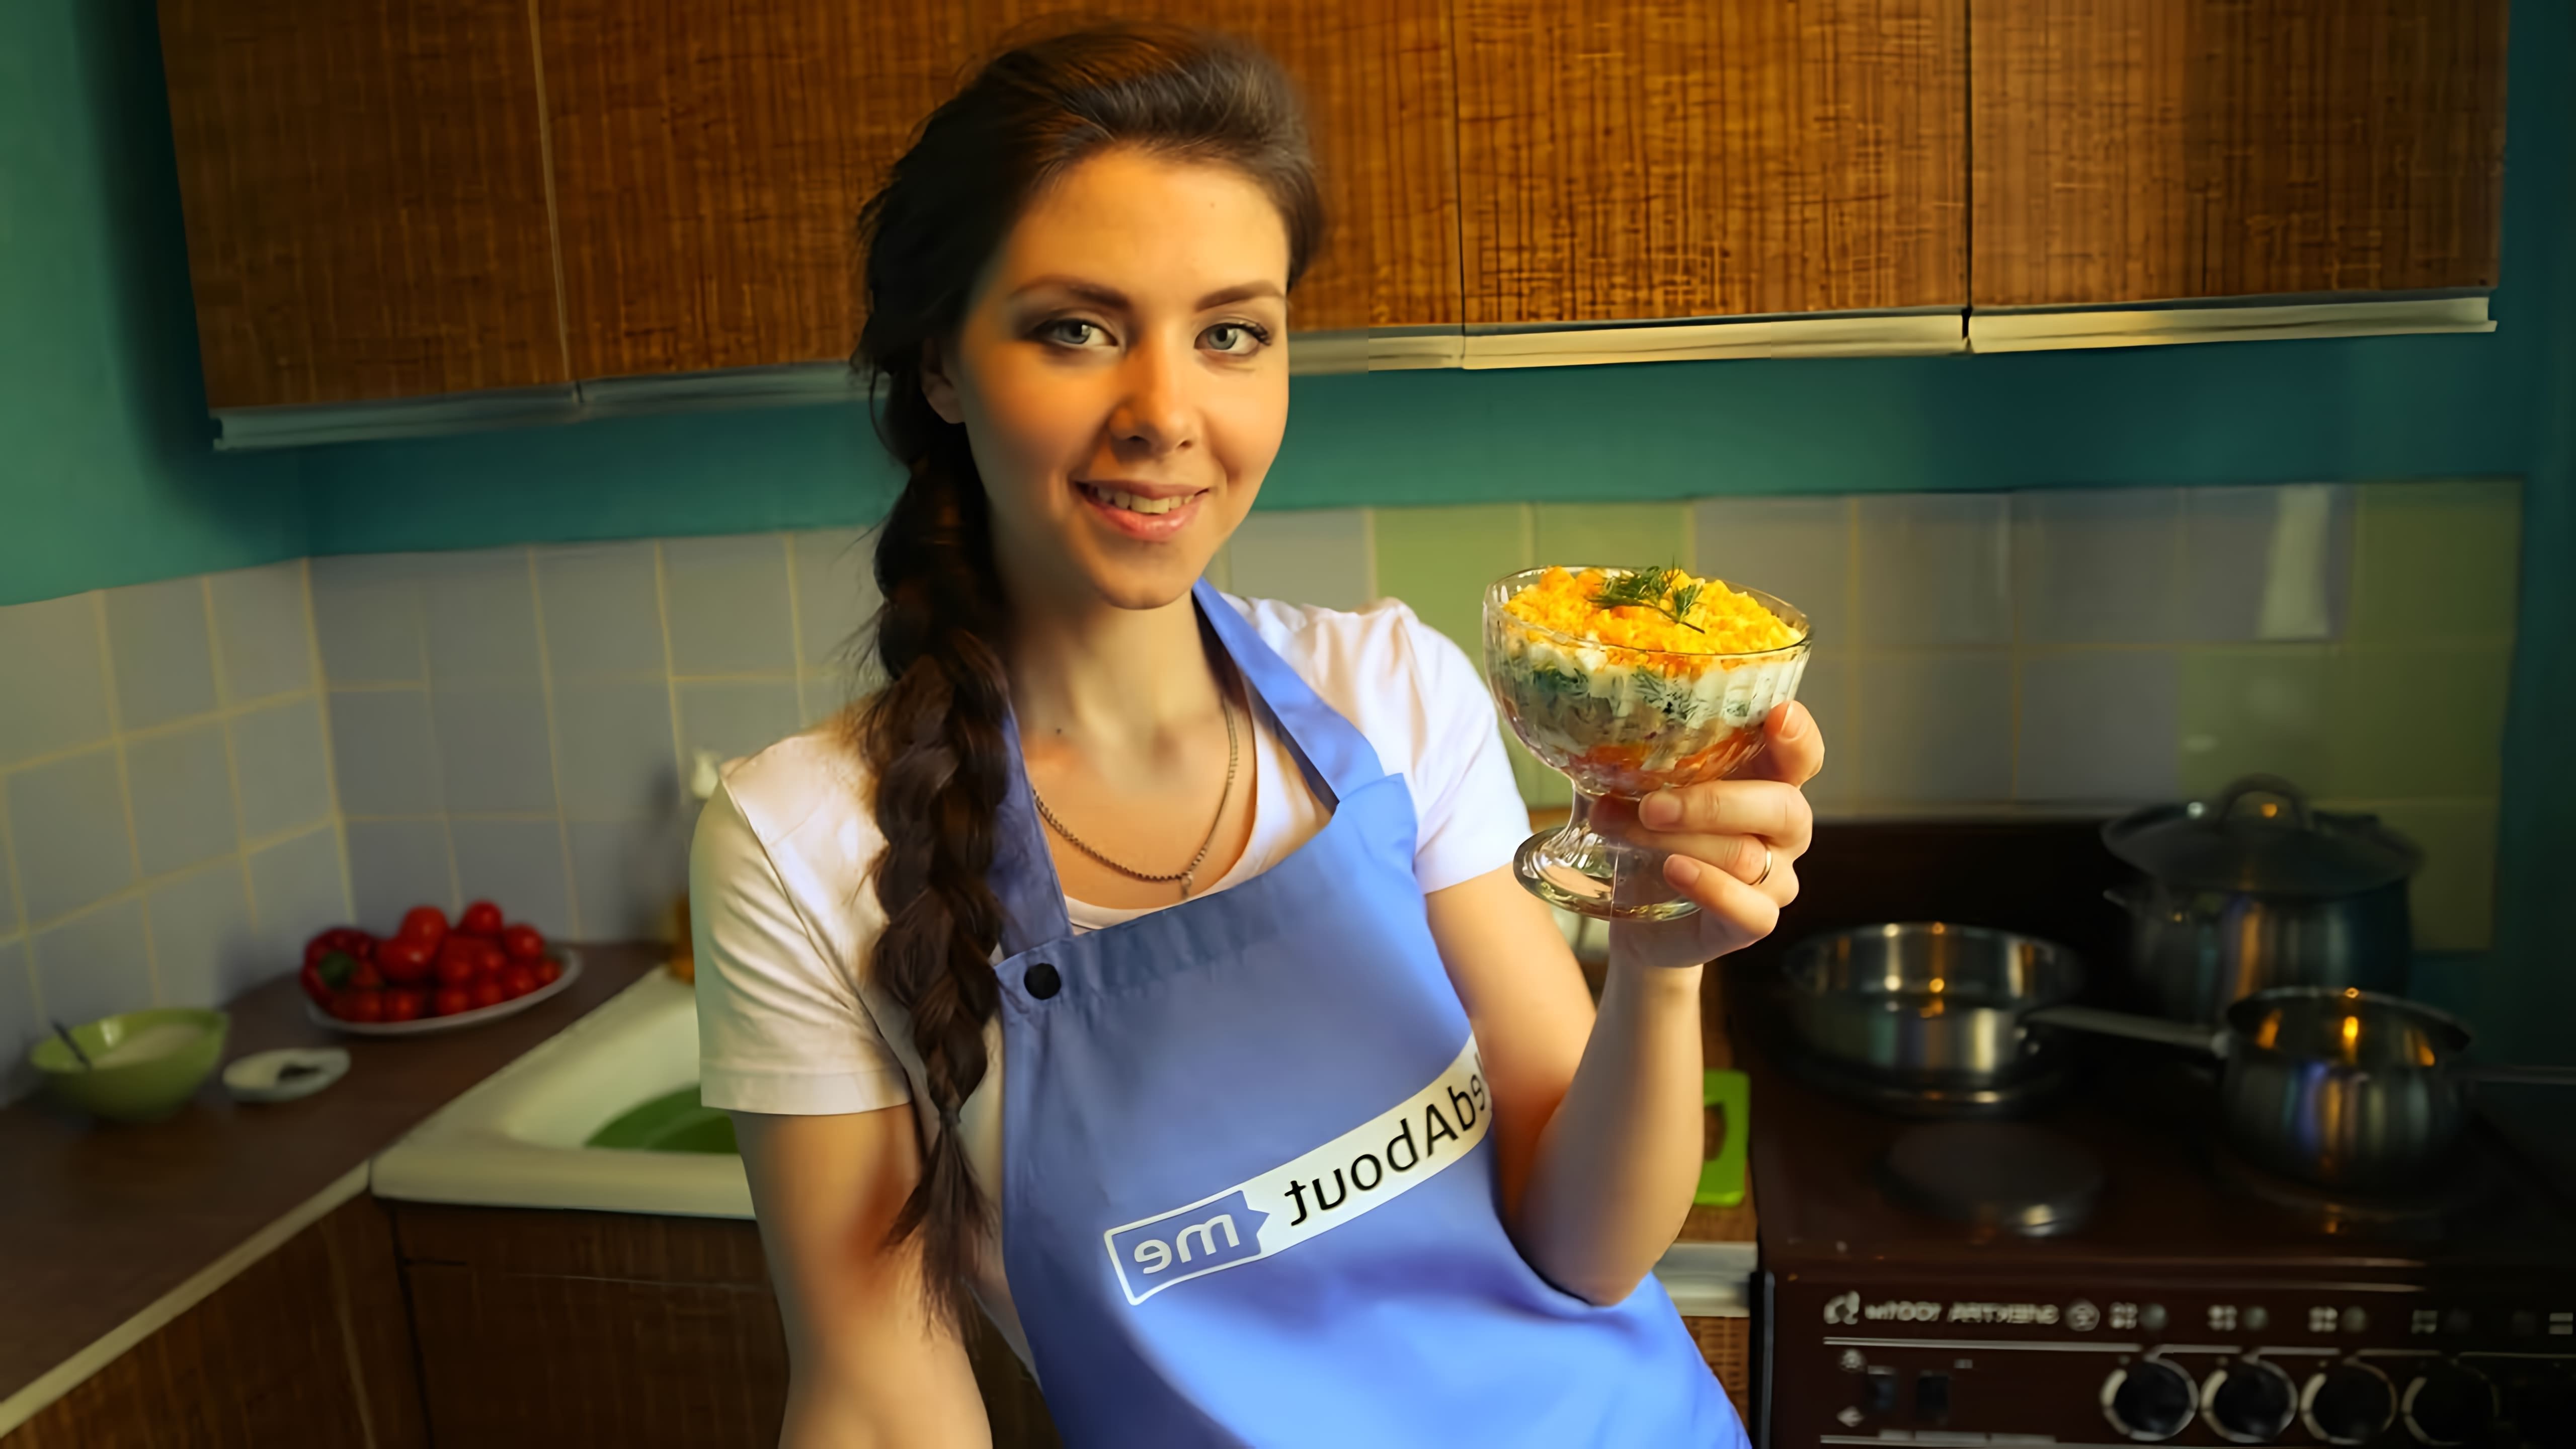 В этом видео демонстрируется рецепт салата "Мимоза", который является быстрым, полезным и вкусным блюдом